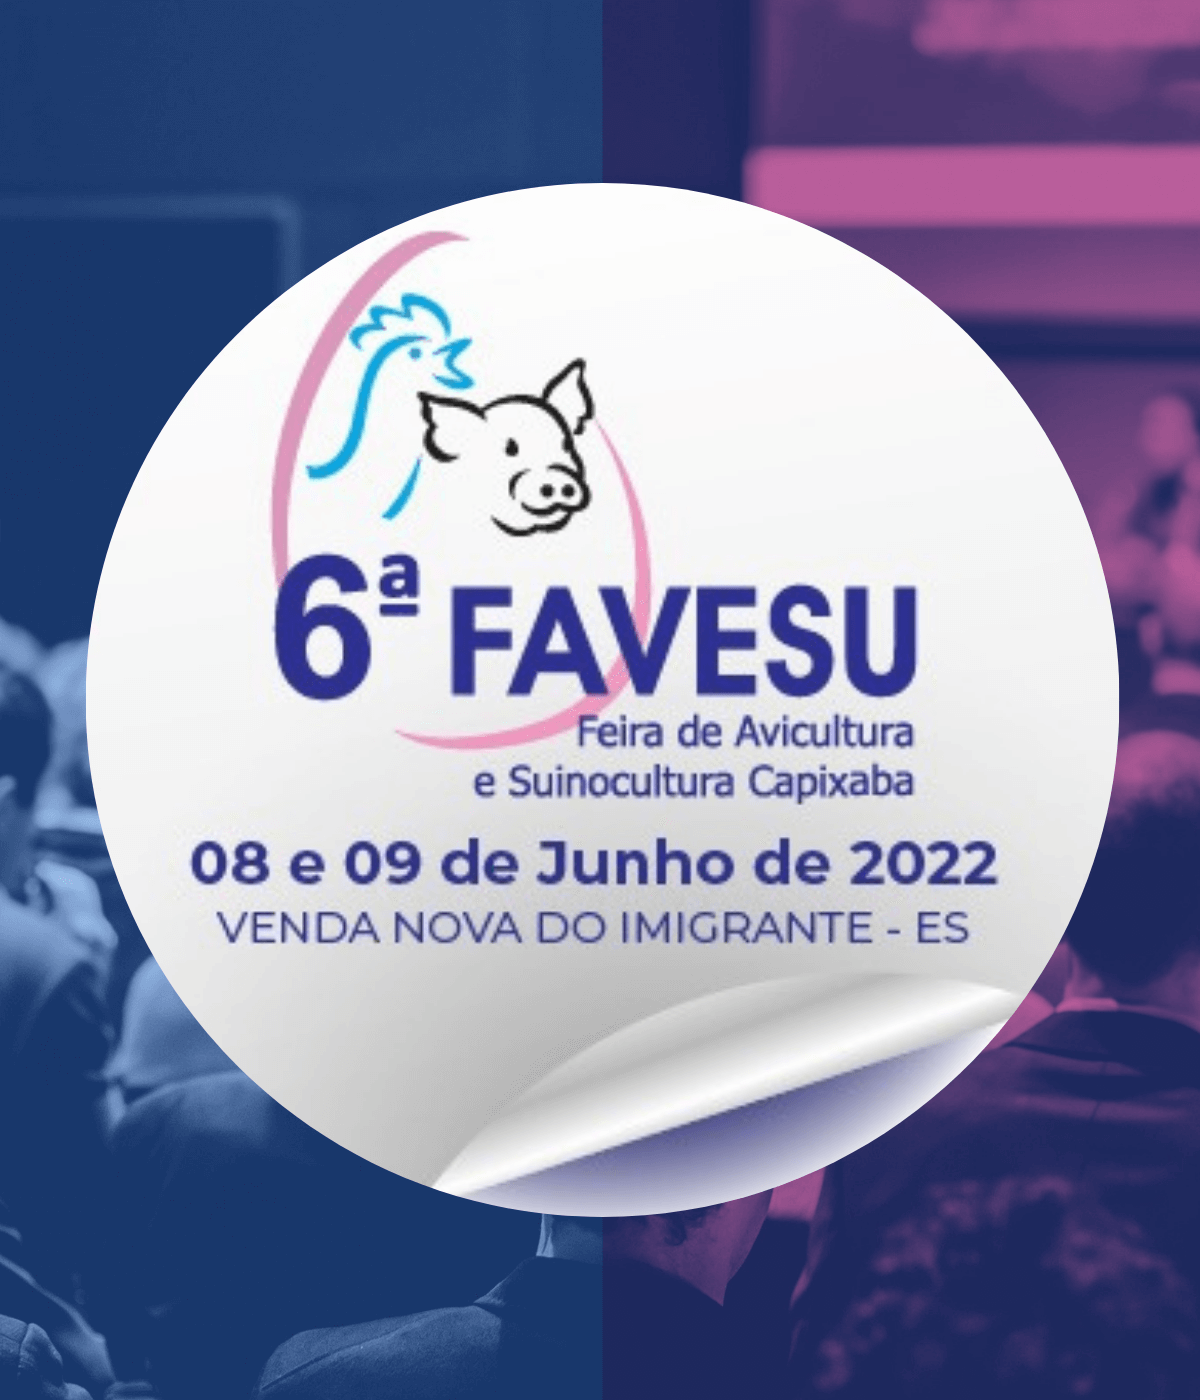 Reunião Conjuntural da 6ª FAVESU debate os números e as perspectivas para os setores avícola, suinícola e o mercado de grãos